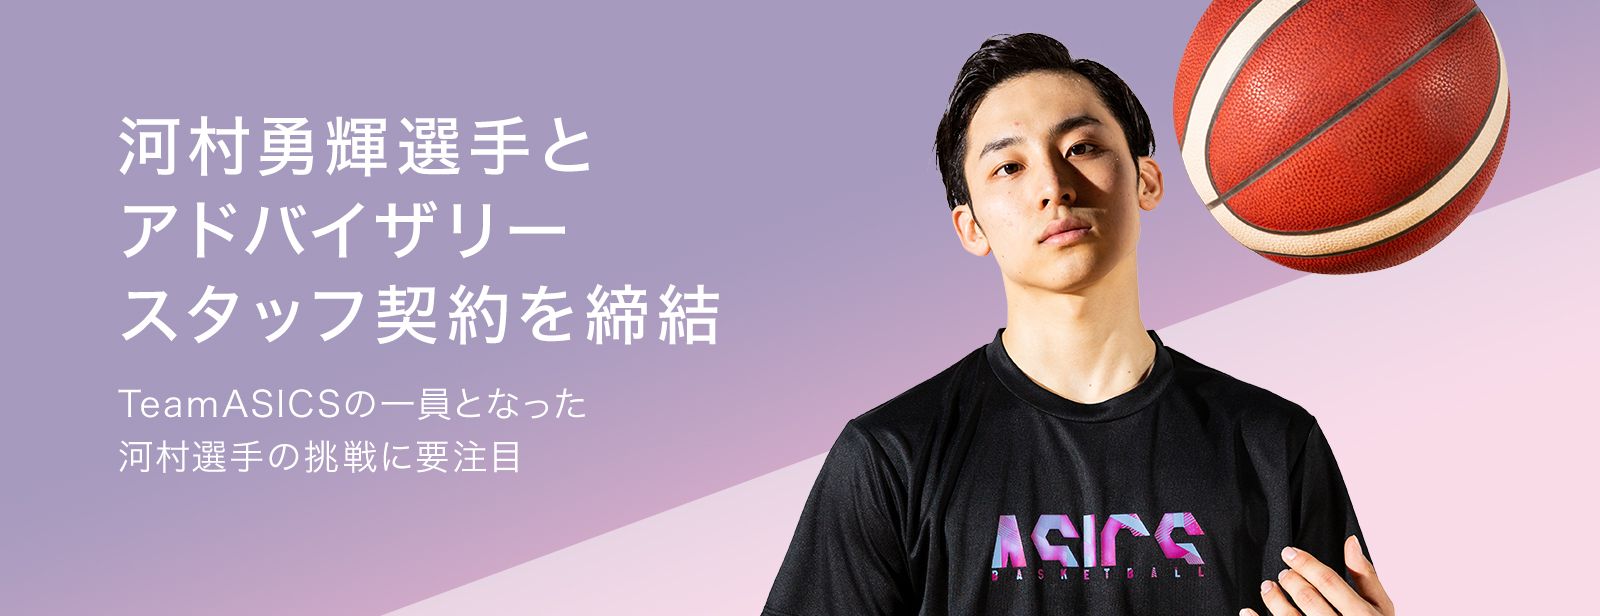 アシックス公式 バスケットボール Asics Japan